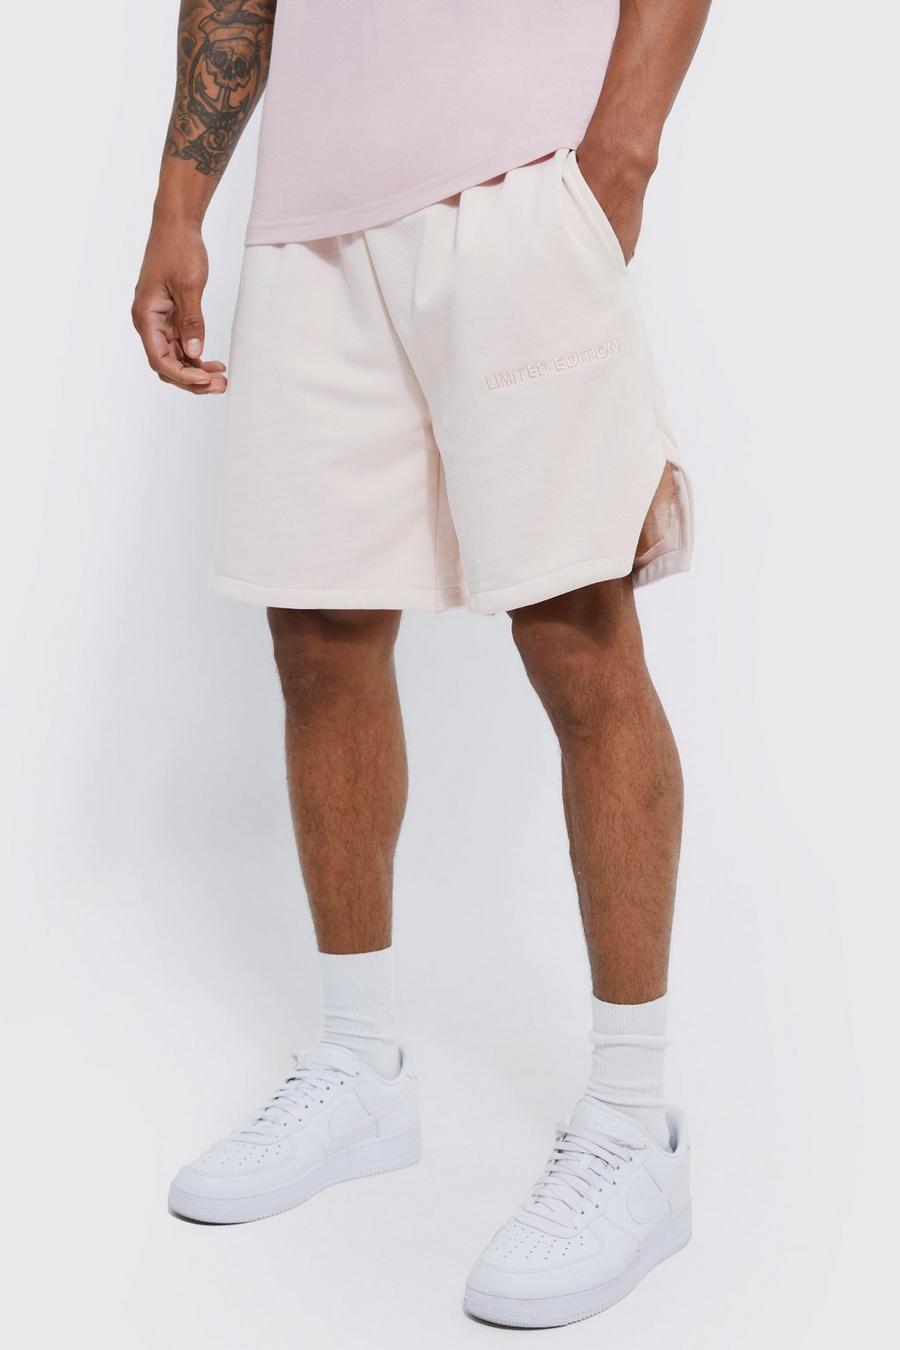 Pantalón corto holgado de vóleibol grueso Limited, Pale pink